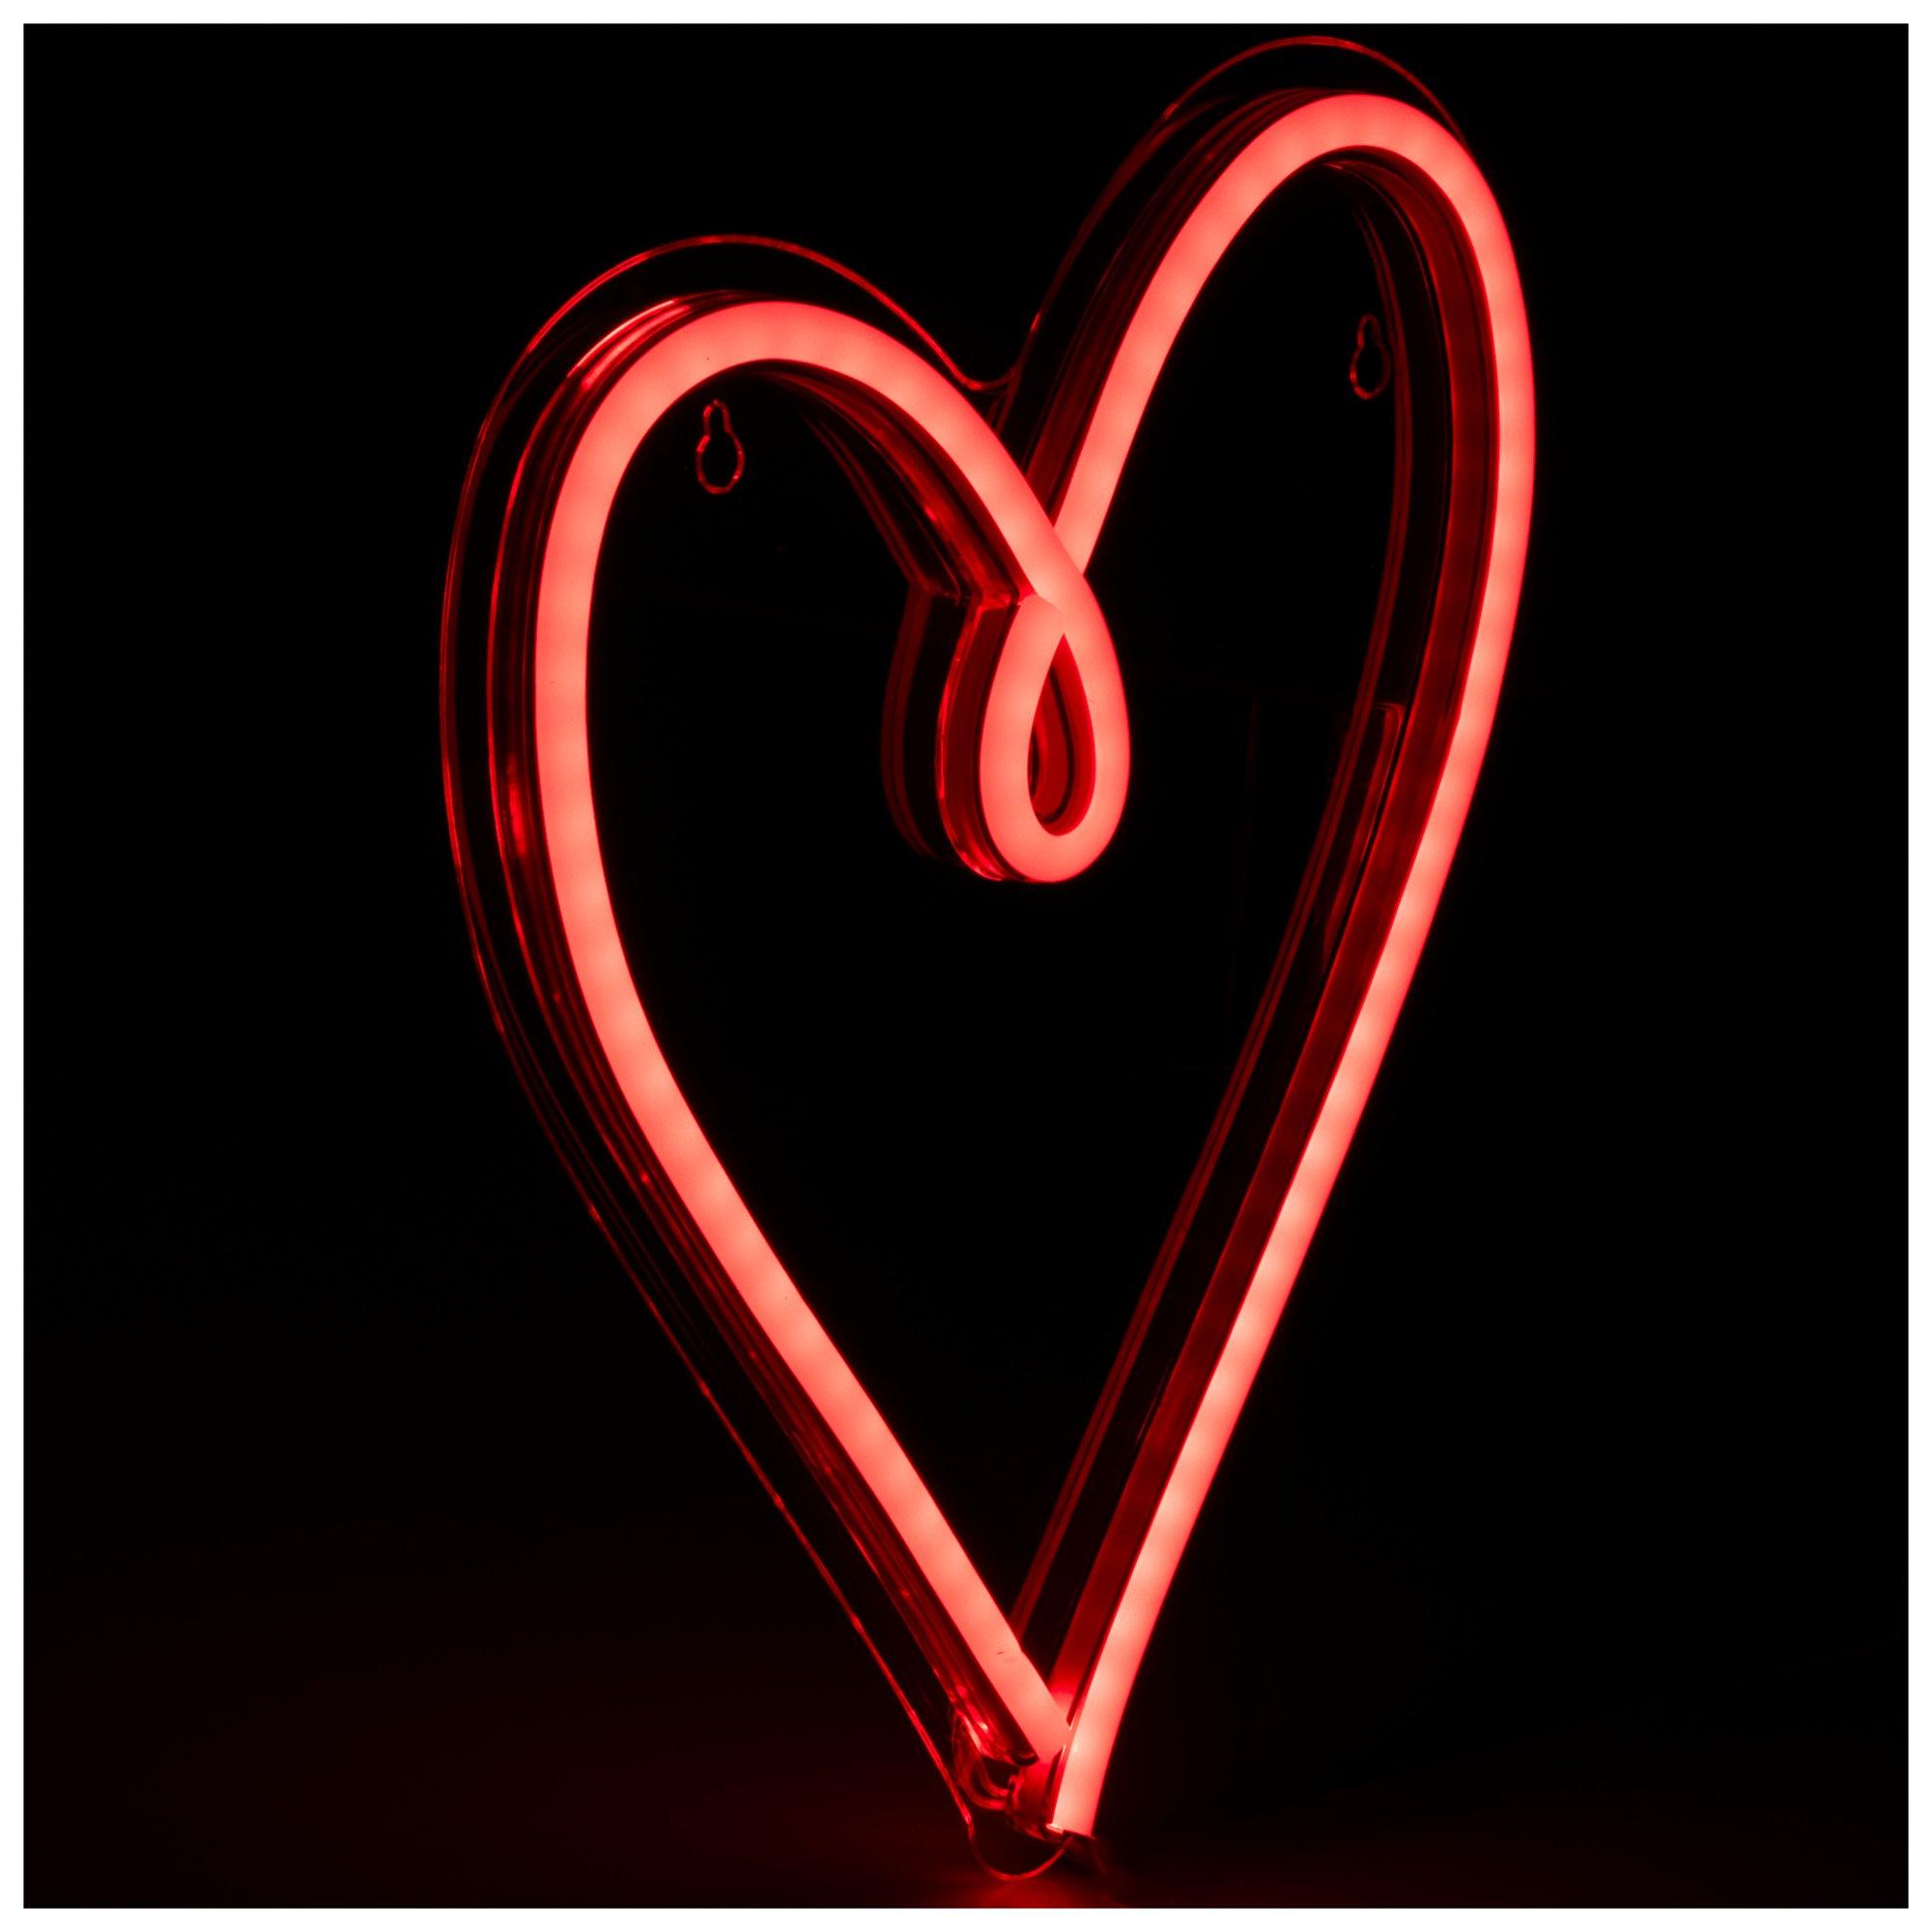 Iridescent Pastel Acrylic Hearts, Hobby Lobby